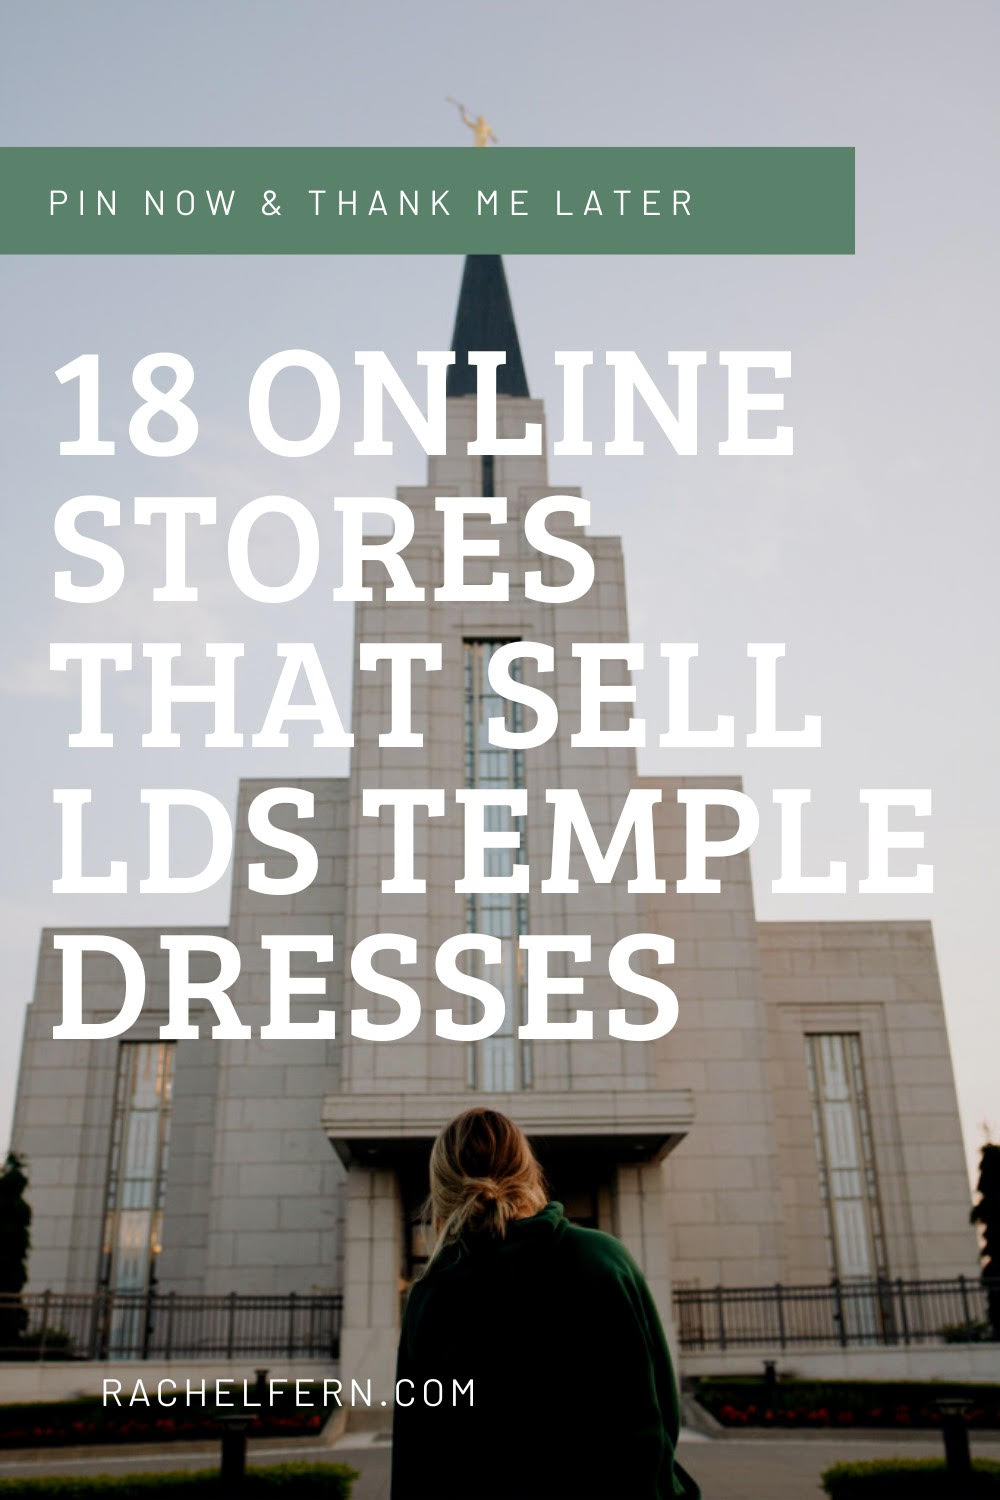 lds temple dresses